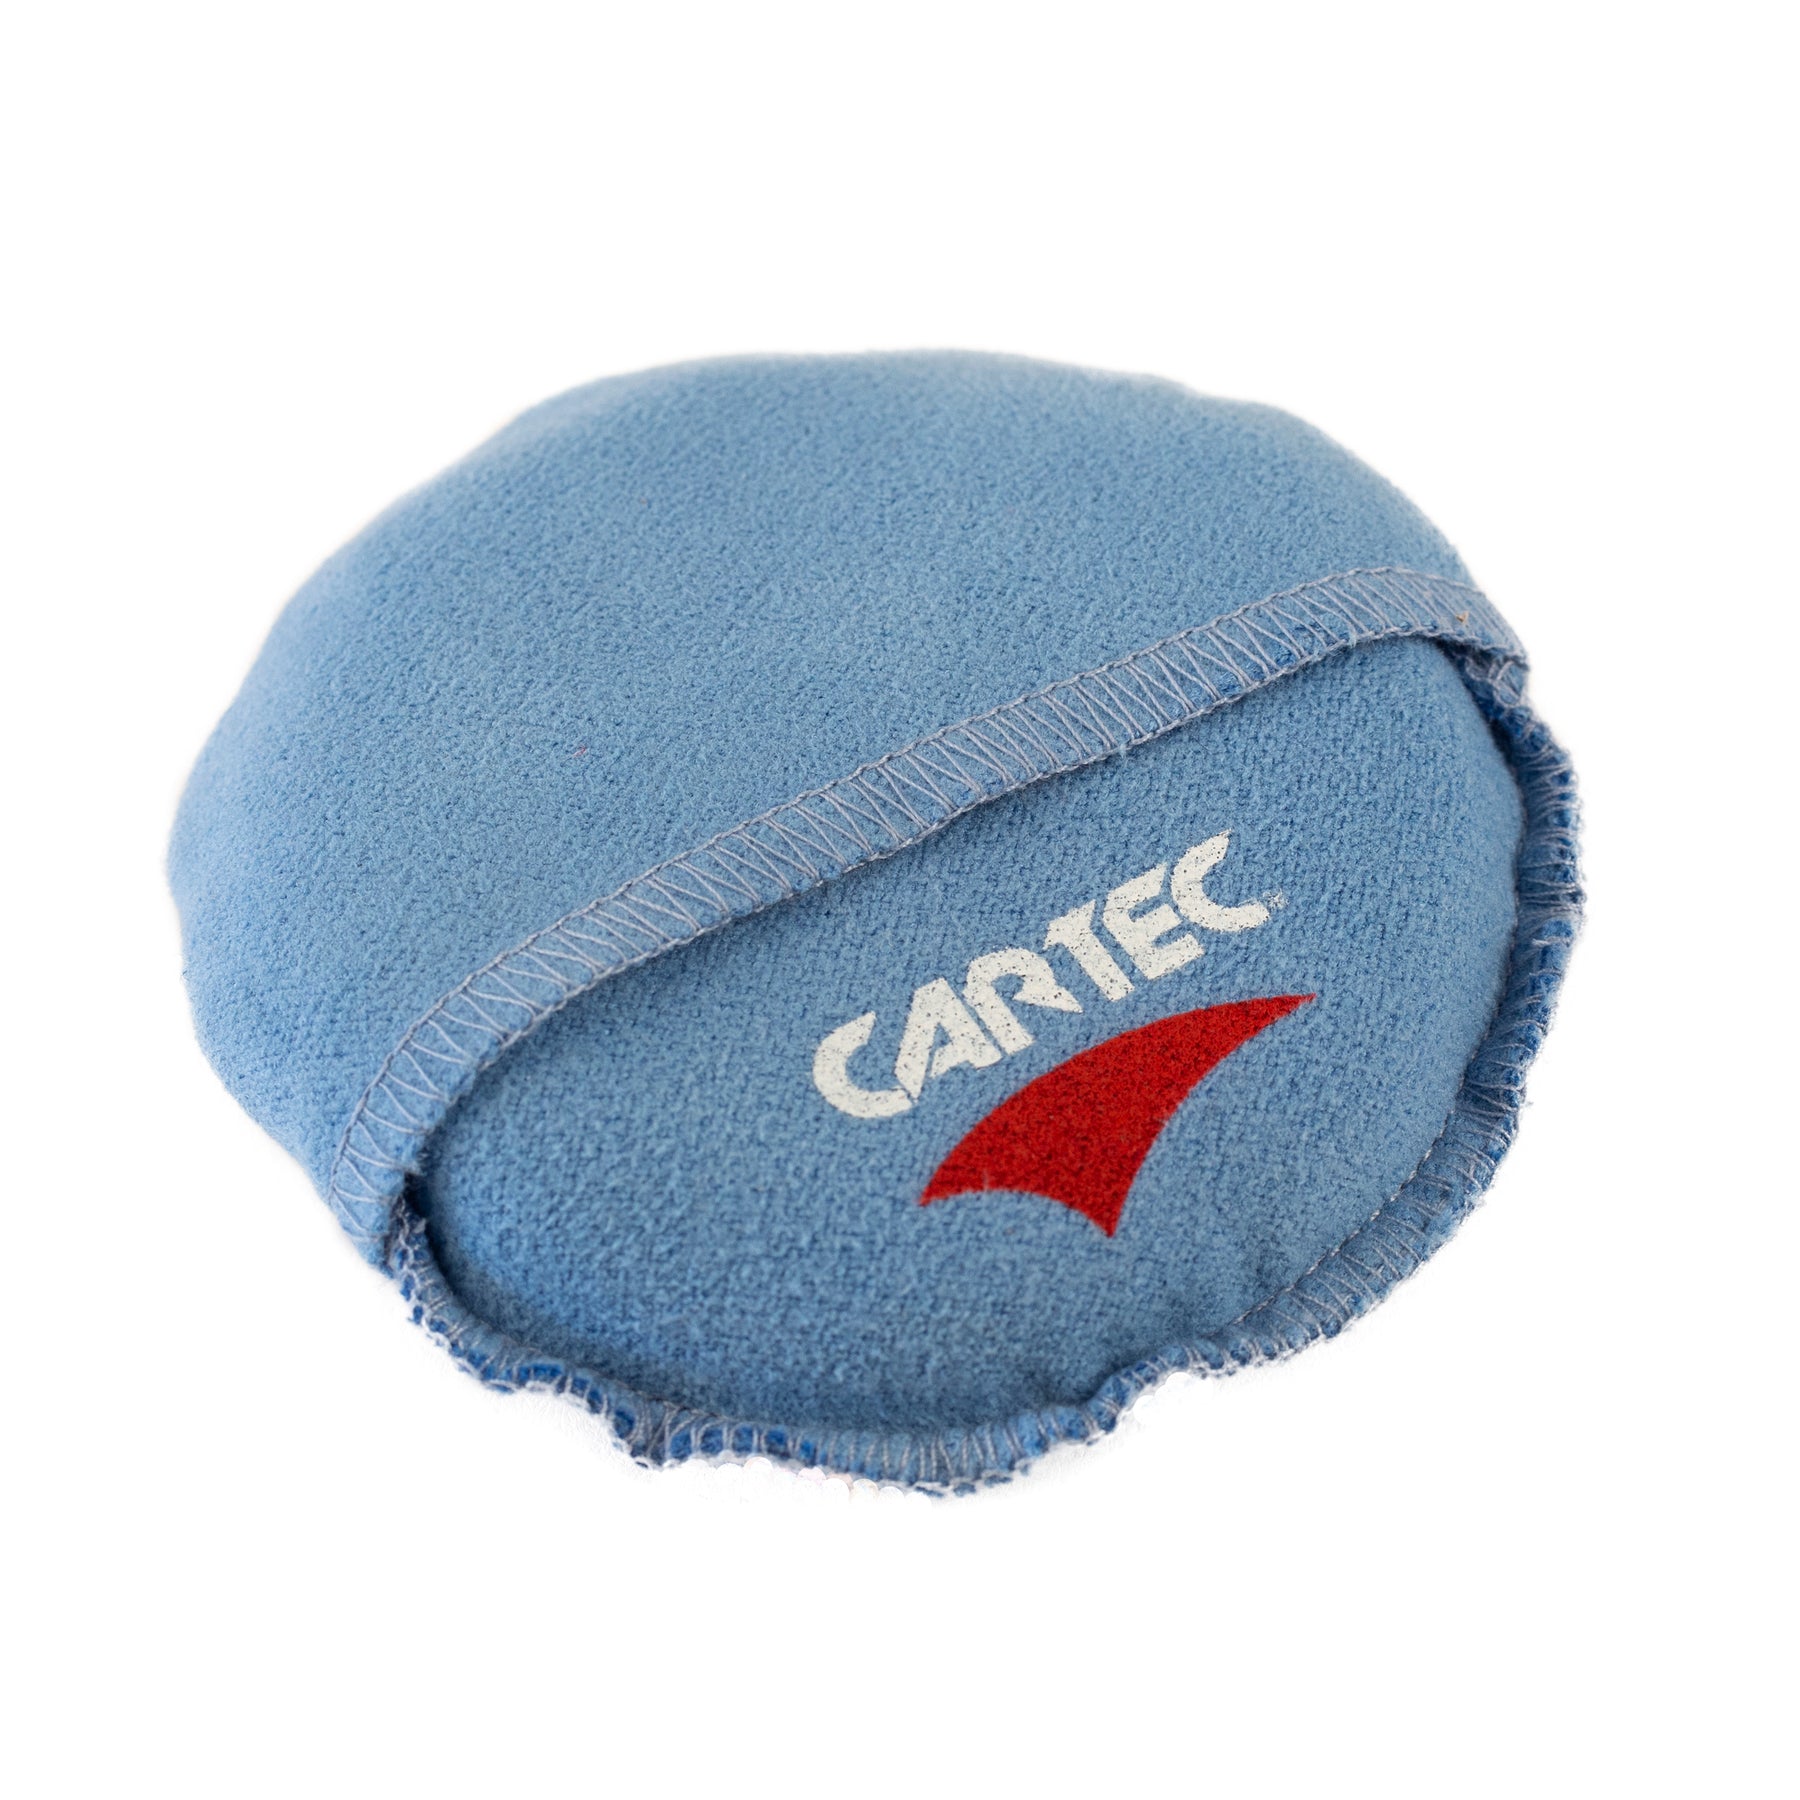 CARTEC Ceramic Guard Fingerpocket